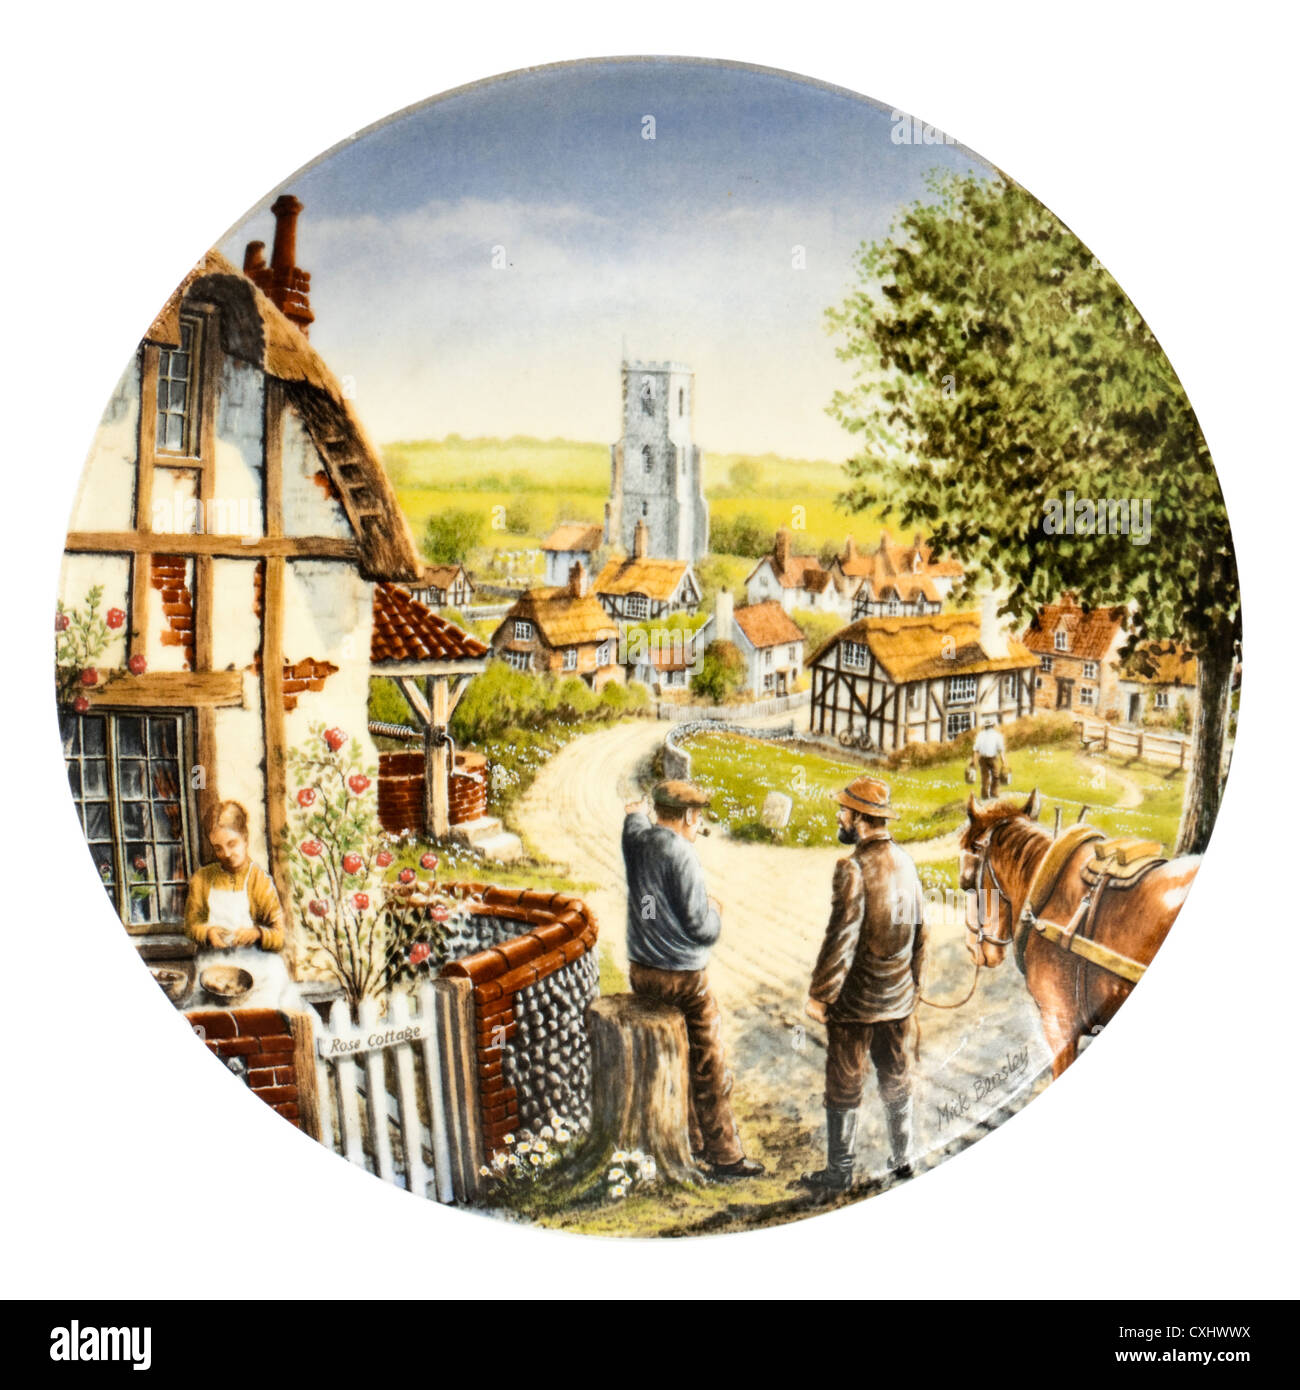 Royal Doulton Porzellan Sammler Teller - "Rose Cottage", erste Ausgabe in der Reihe "Reise durch das Dorf" Stockfoto